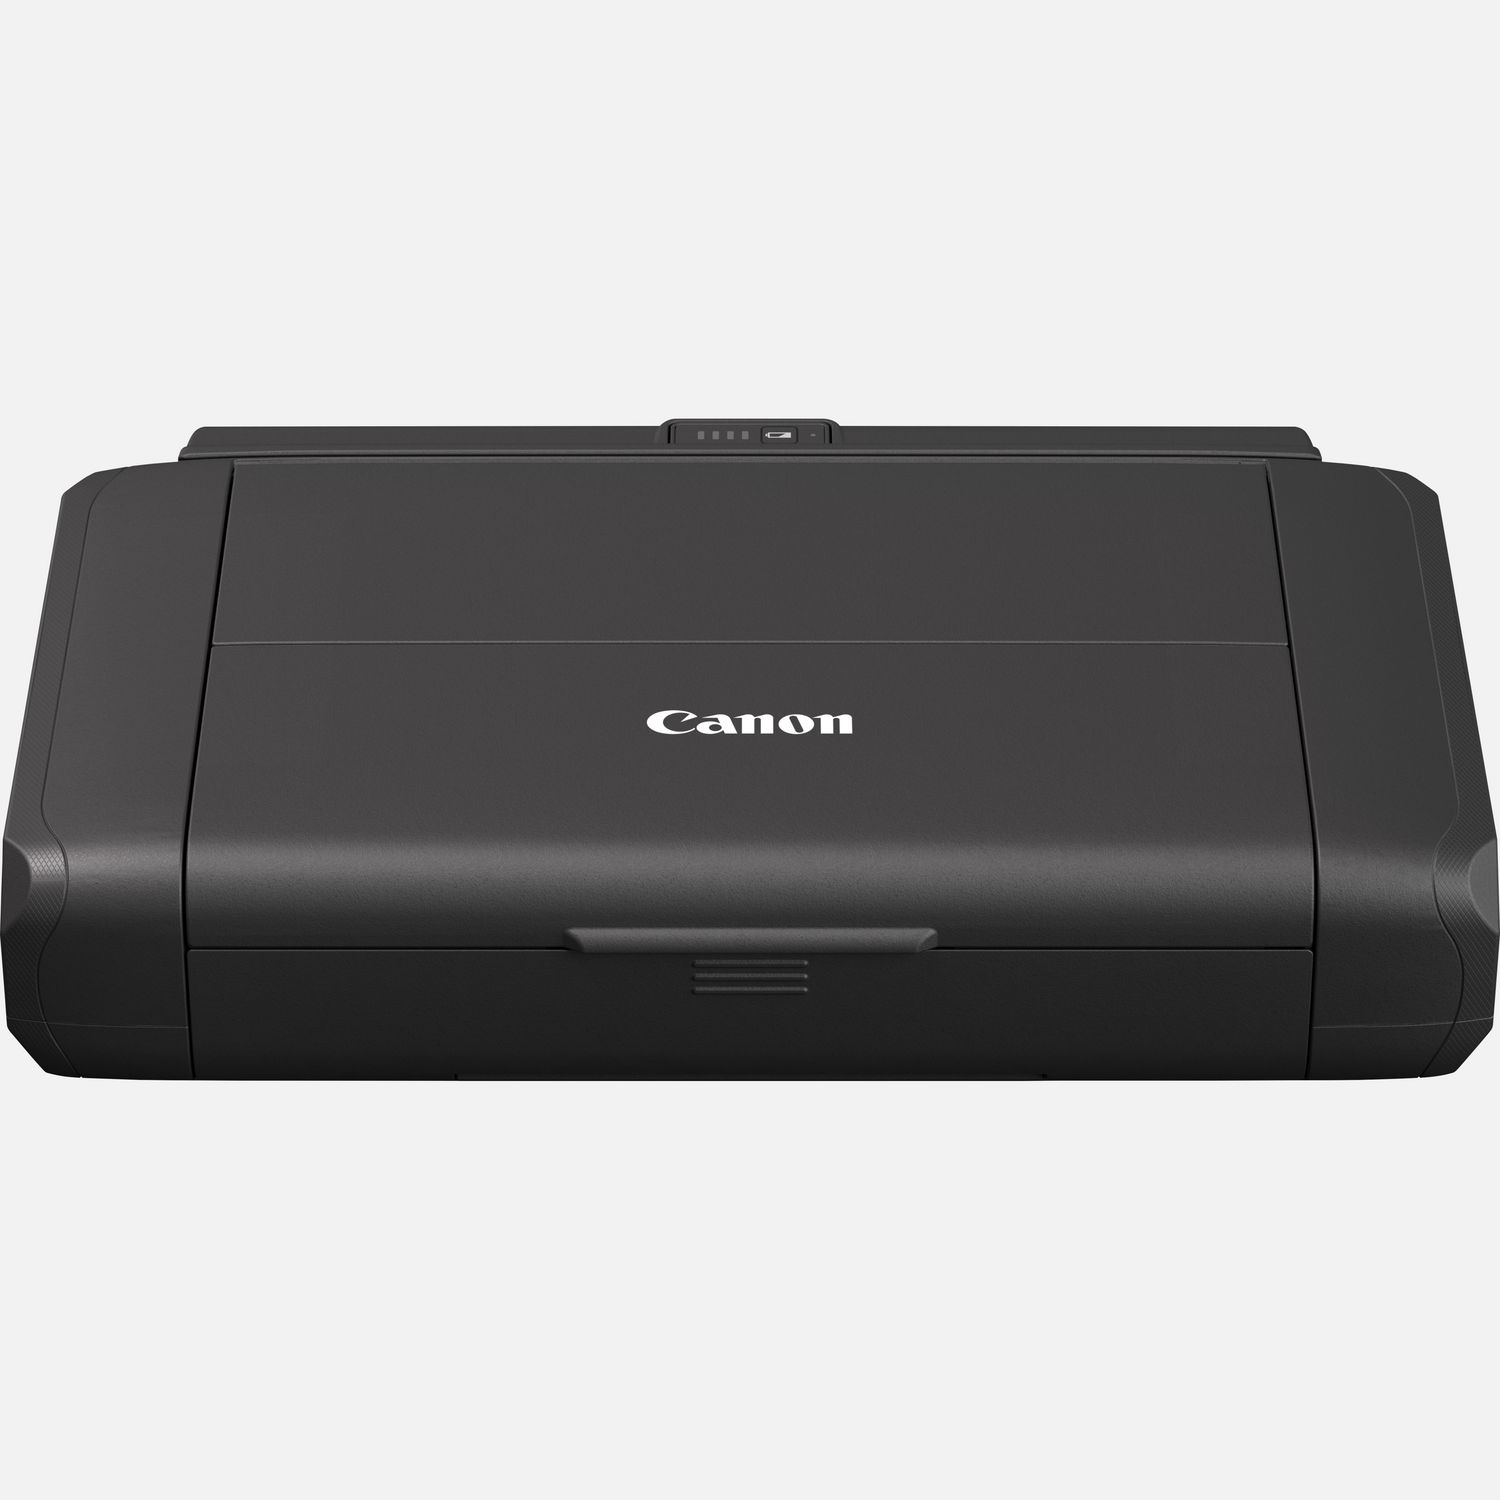 Canon: stampante e scanner portatili in video - Notebook Italia